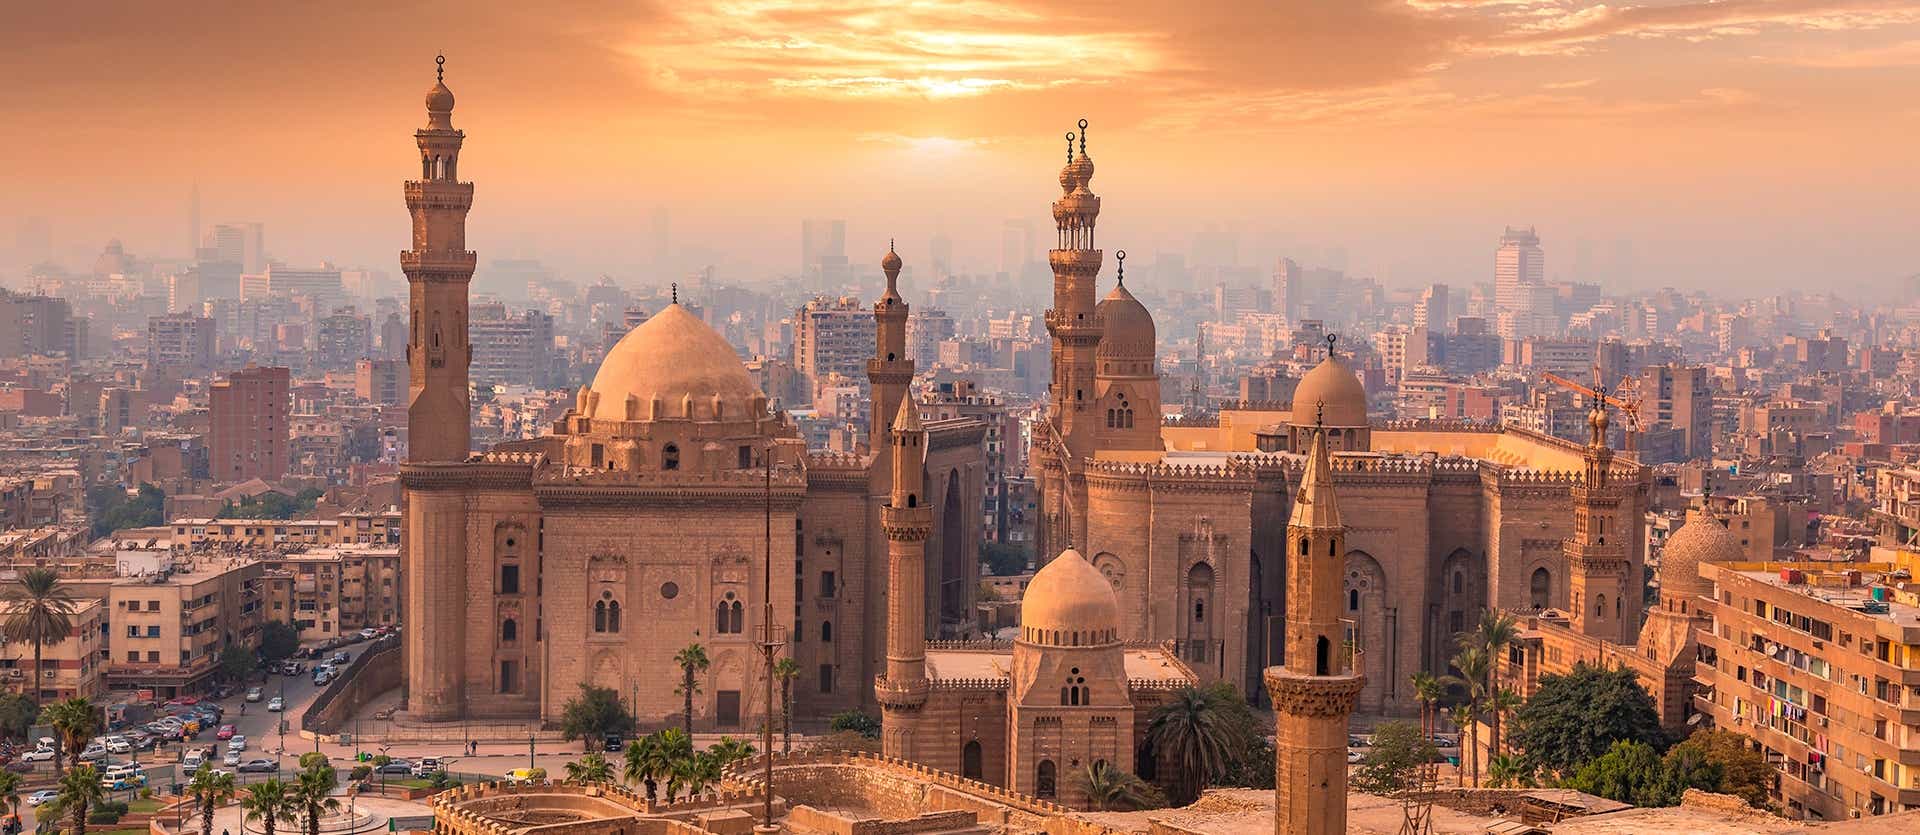 Mosque Madrasa of Sultan Hassan <span class="iconos separador"></span> Cairo Citadel <span class="iconos separador"></span> Egypt 